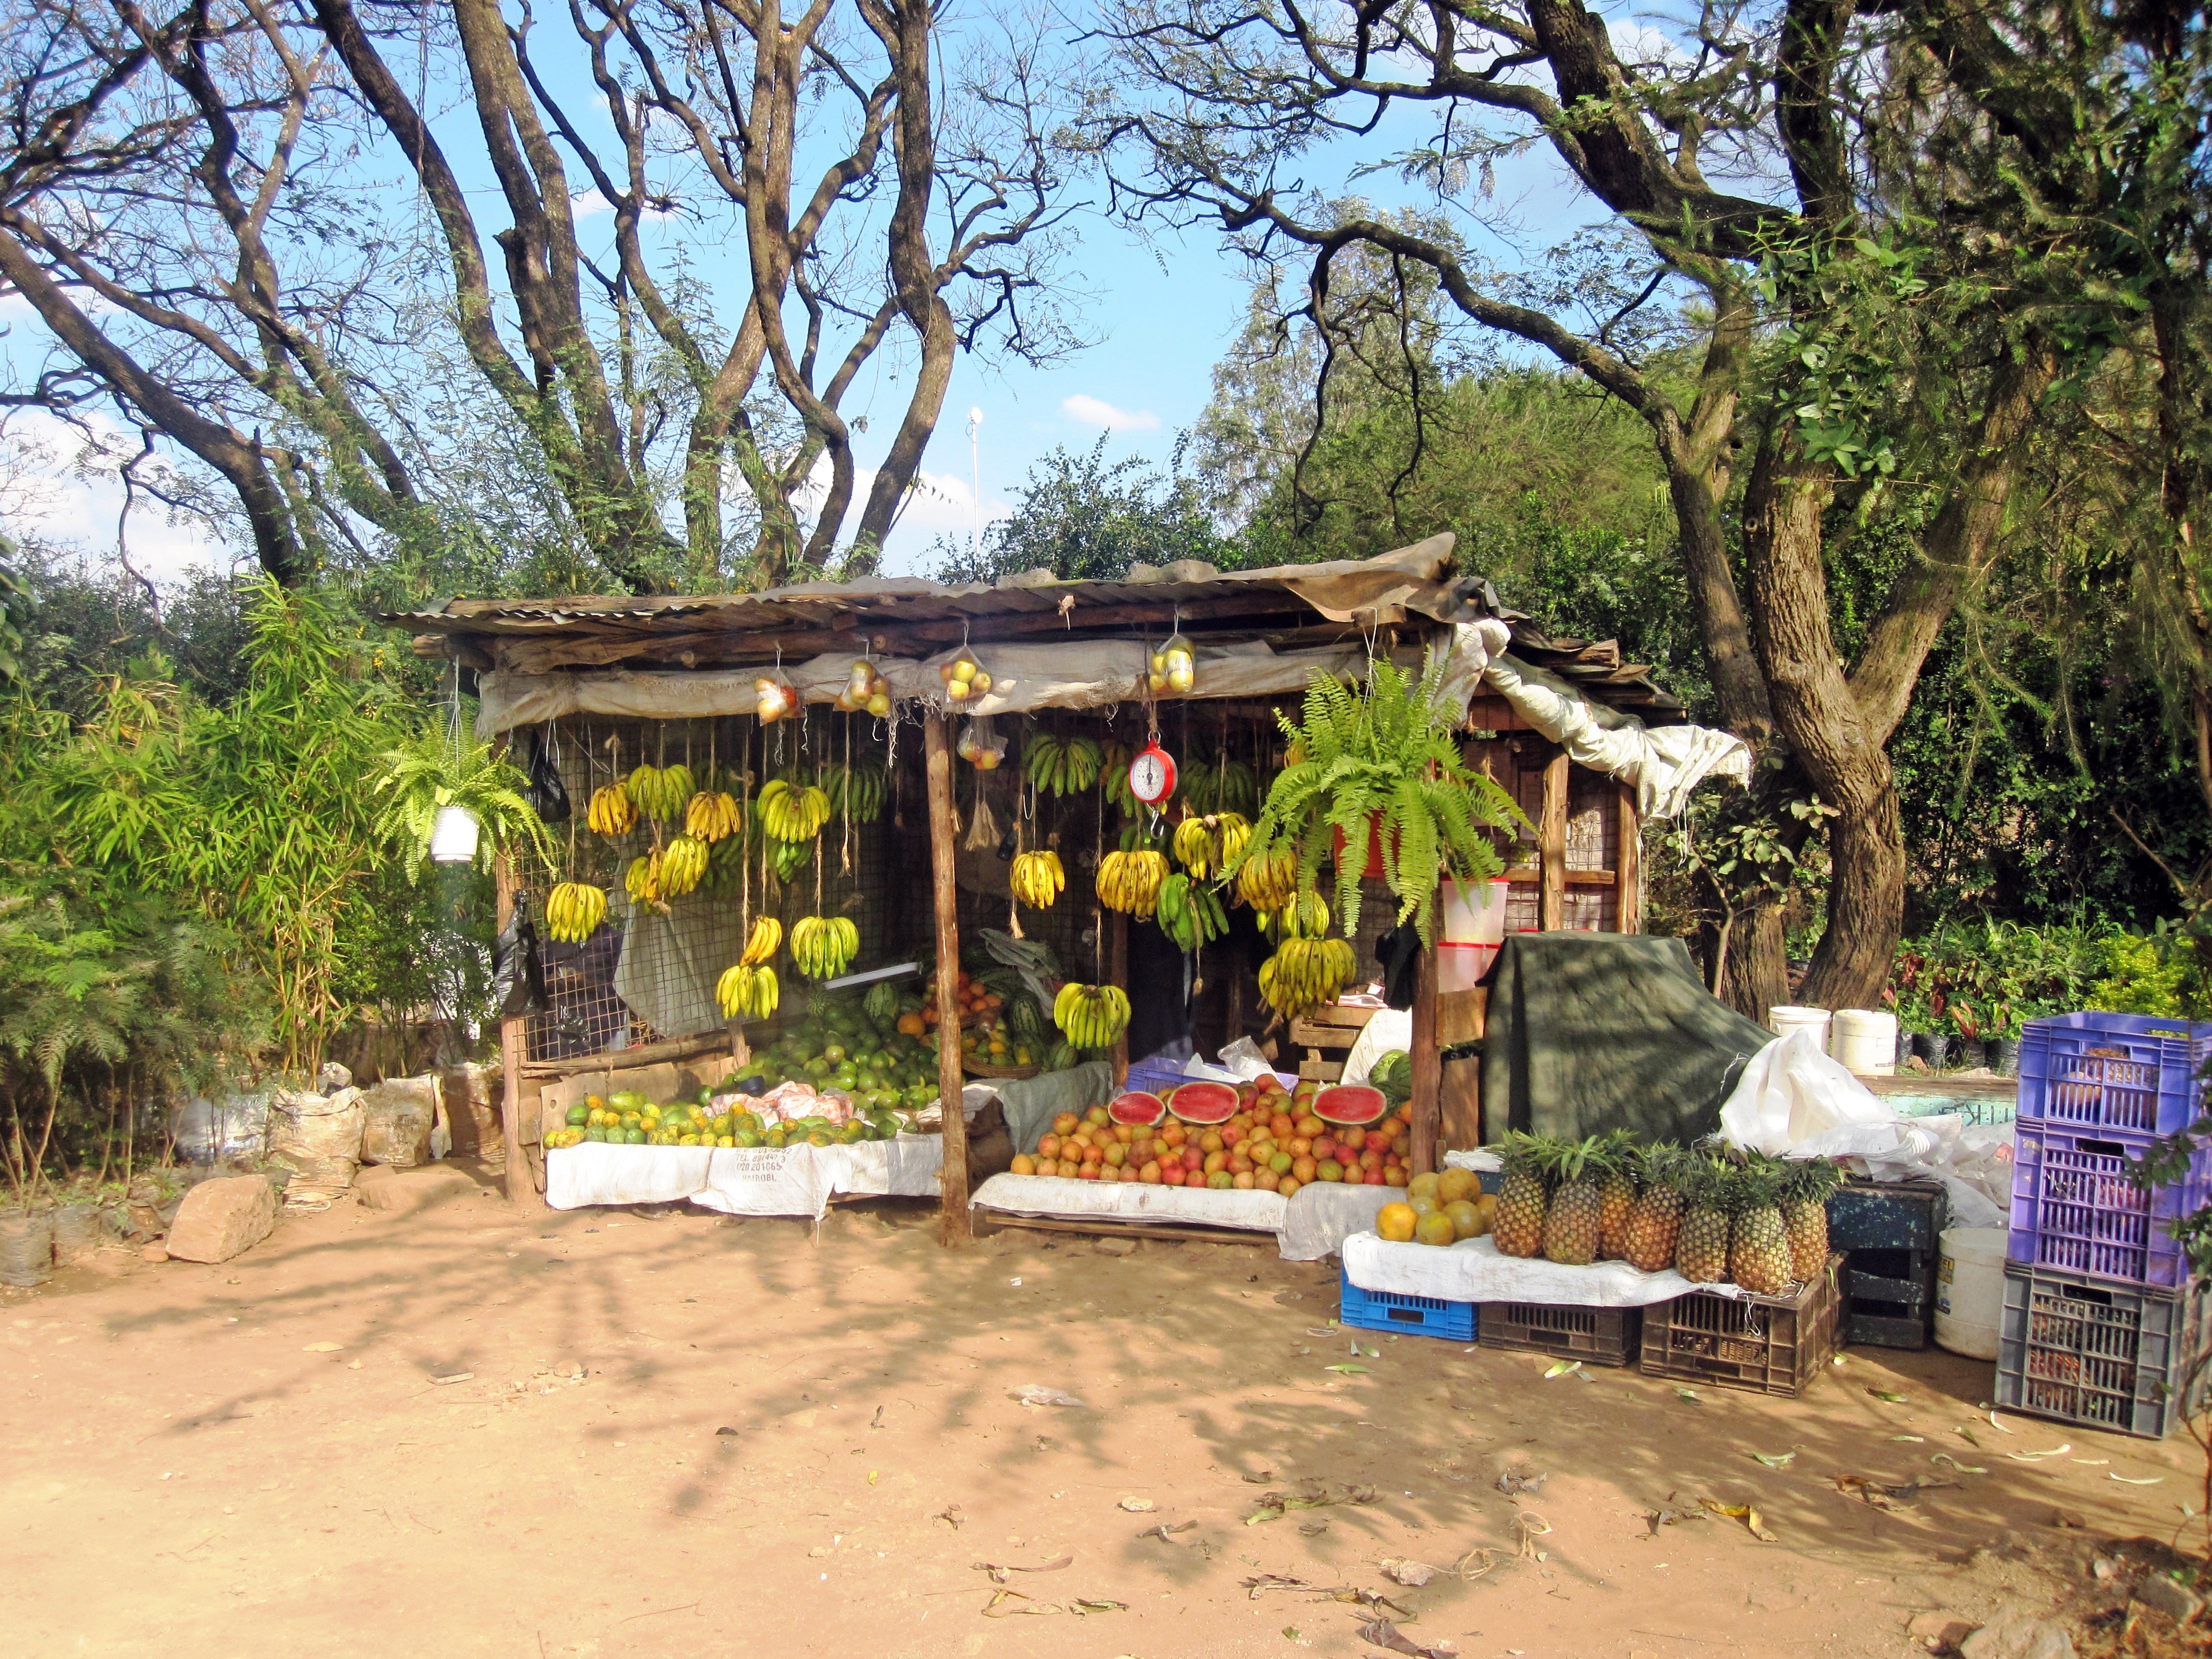 A fruit garden in Nairobi